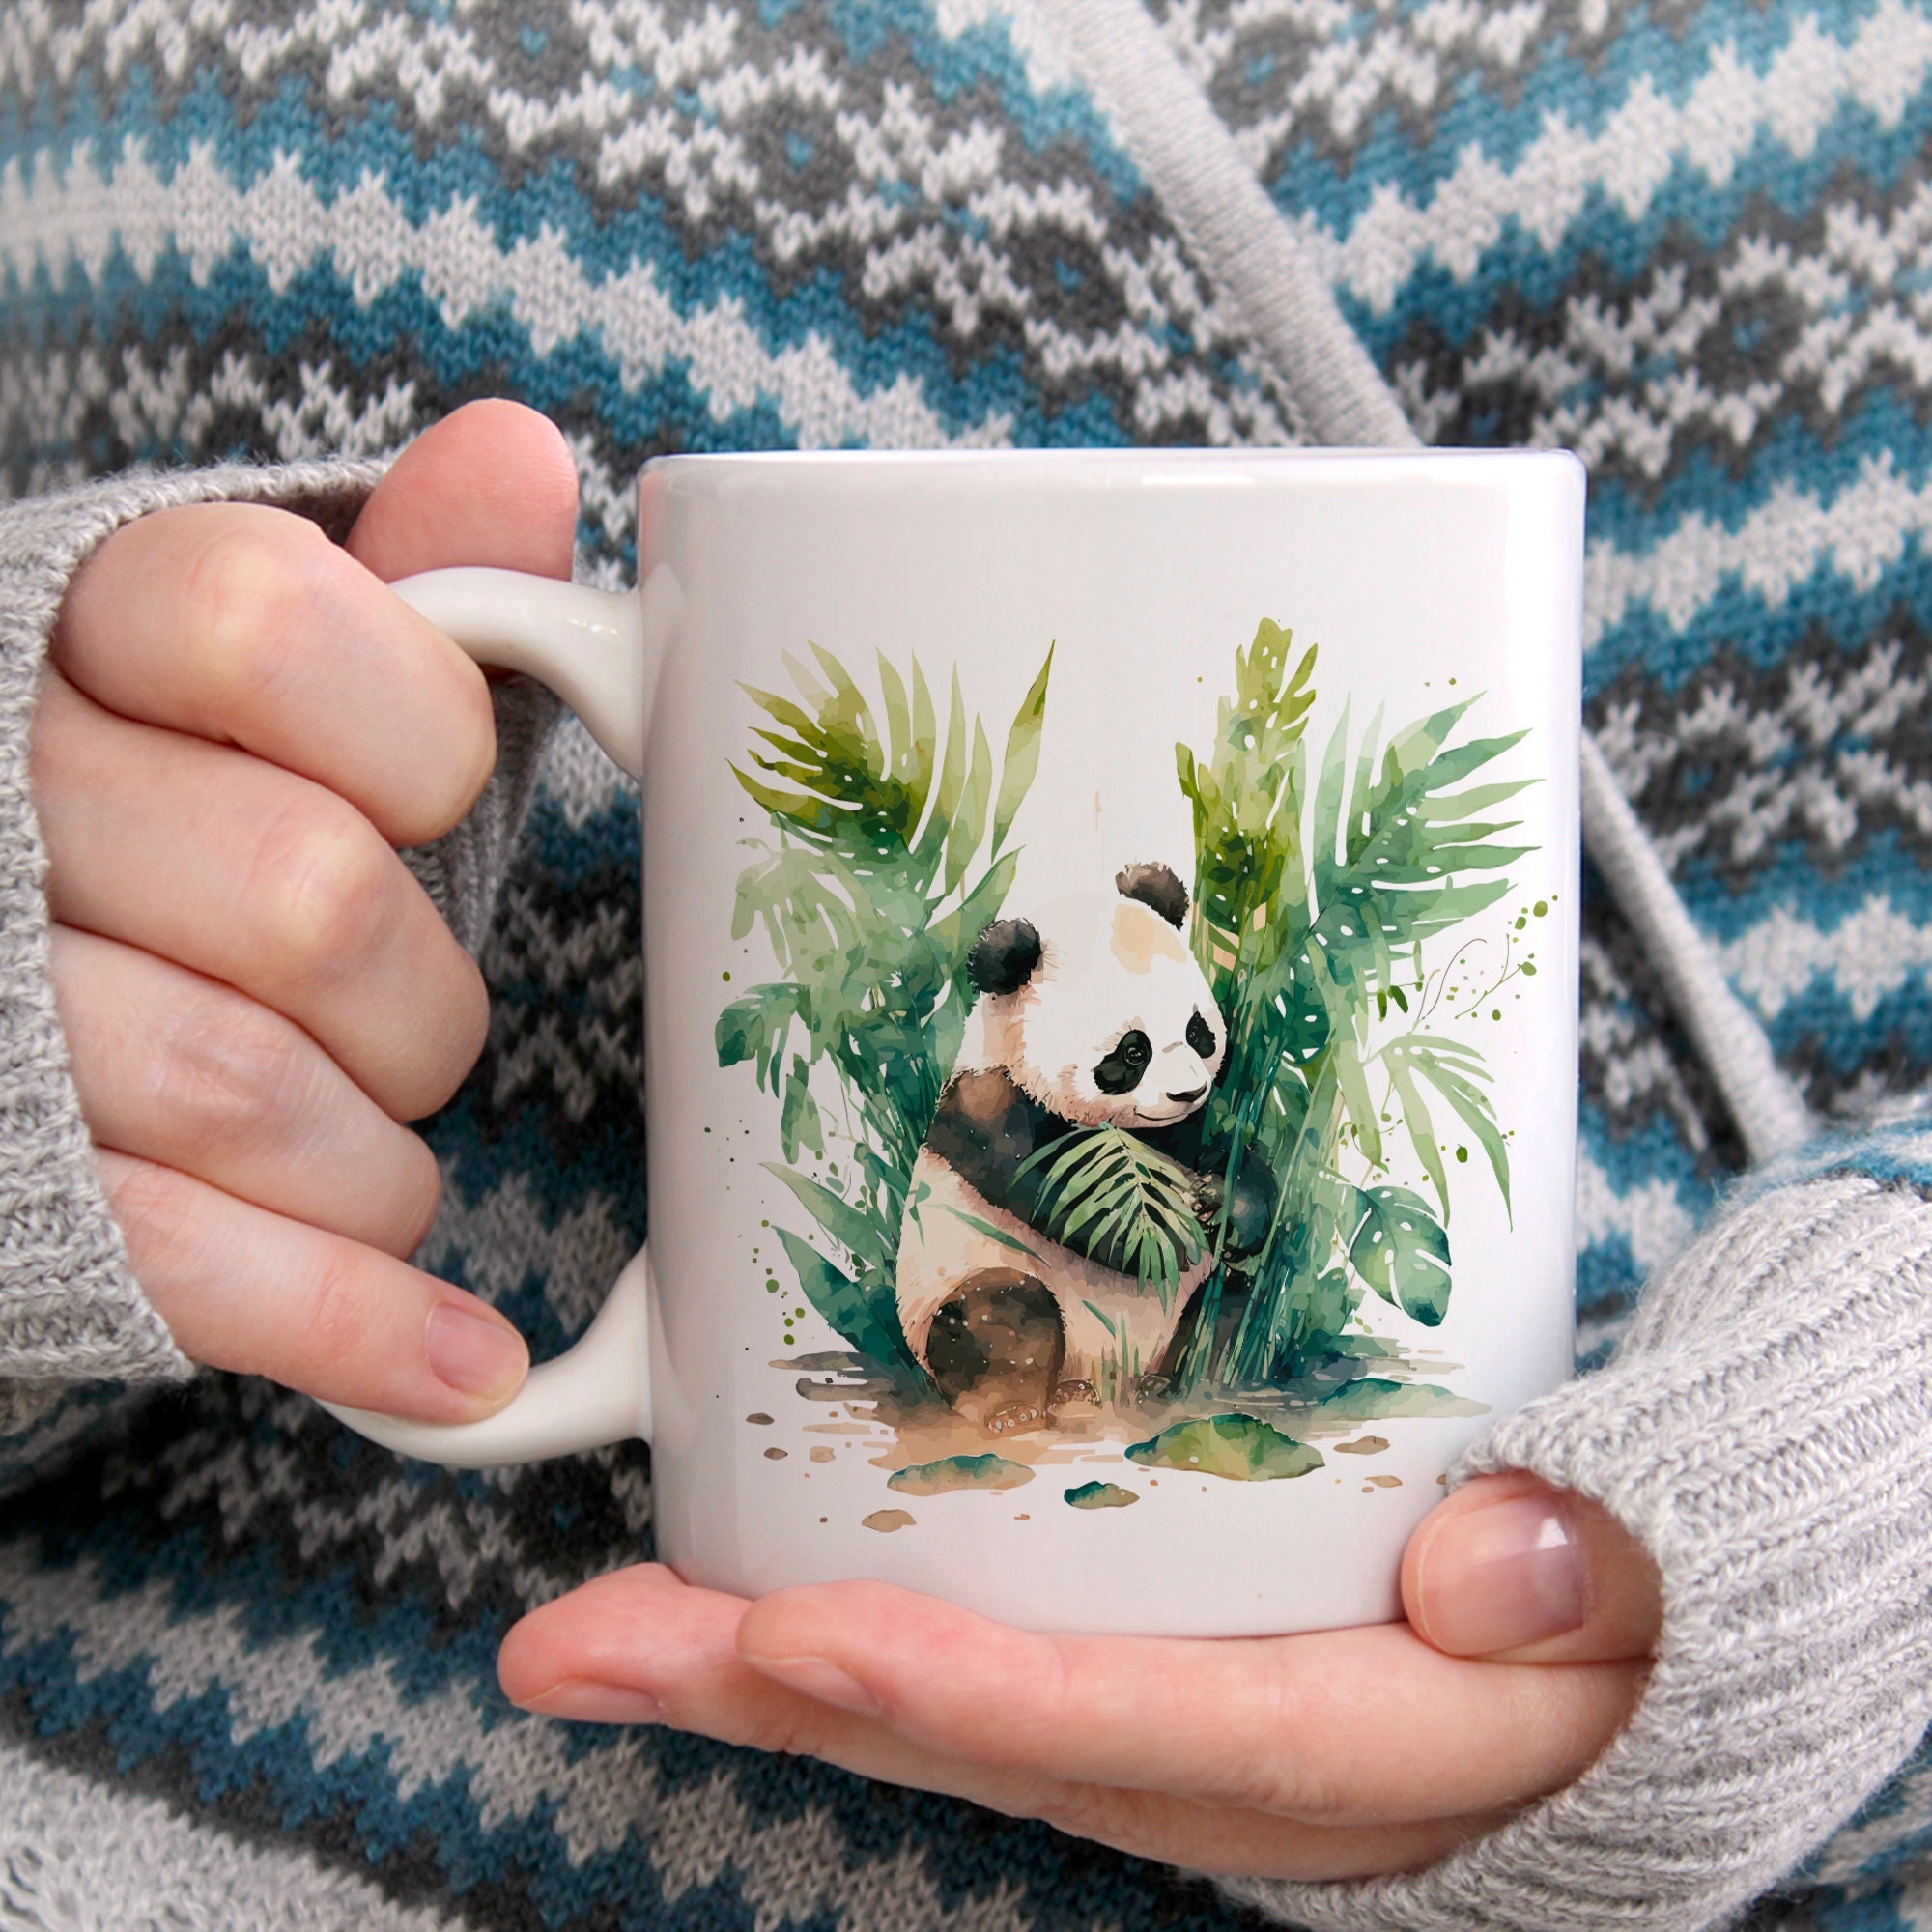 Découvrez la Tasse Panda en Verre Double Paroi - Un Cadeau Original ! –  MaPetiteTasse